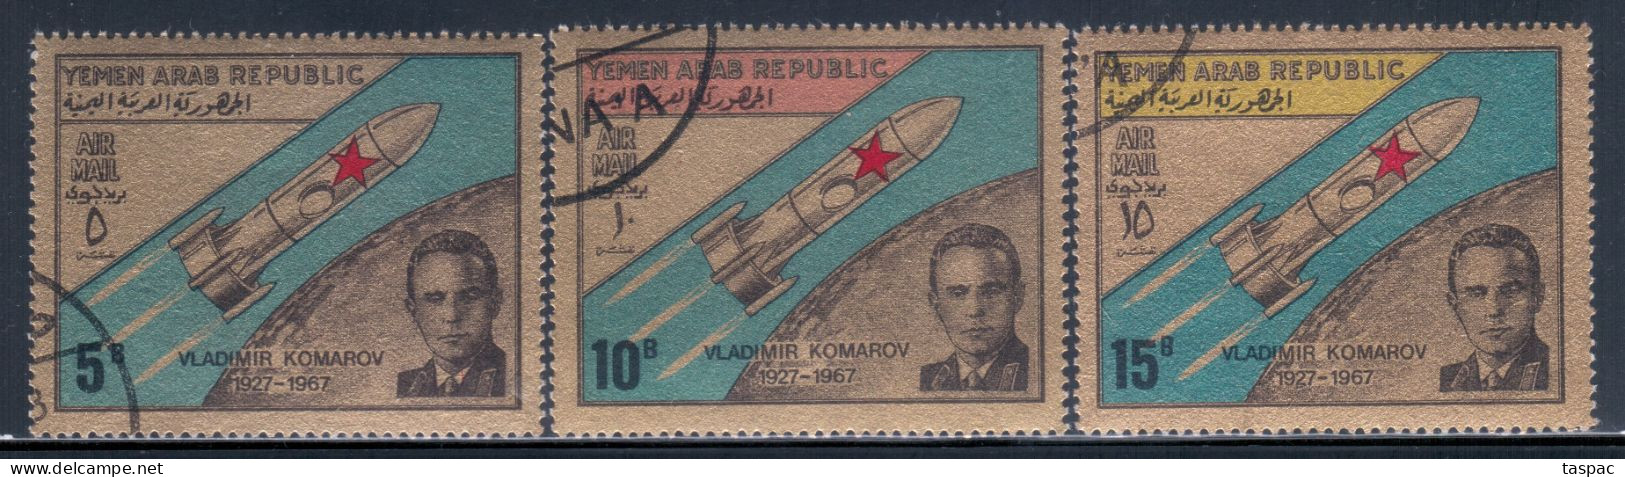 North Yemen 1968 Mi# 710-712 Used - 1st Death Anniv. Of V. Komarov, Soviet Cosmonaut / Space - Yemen